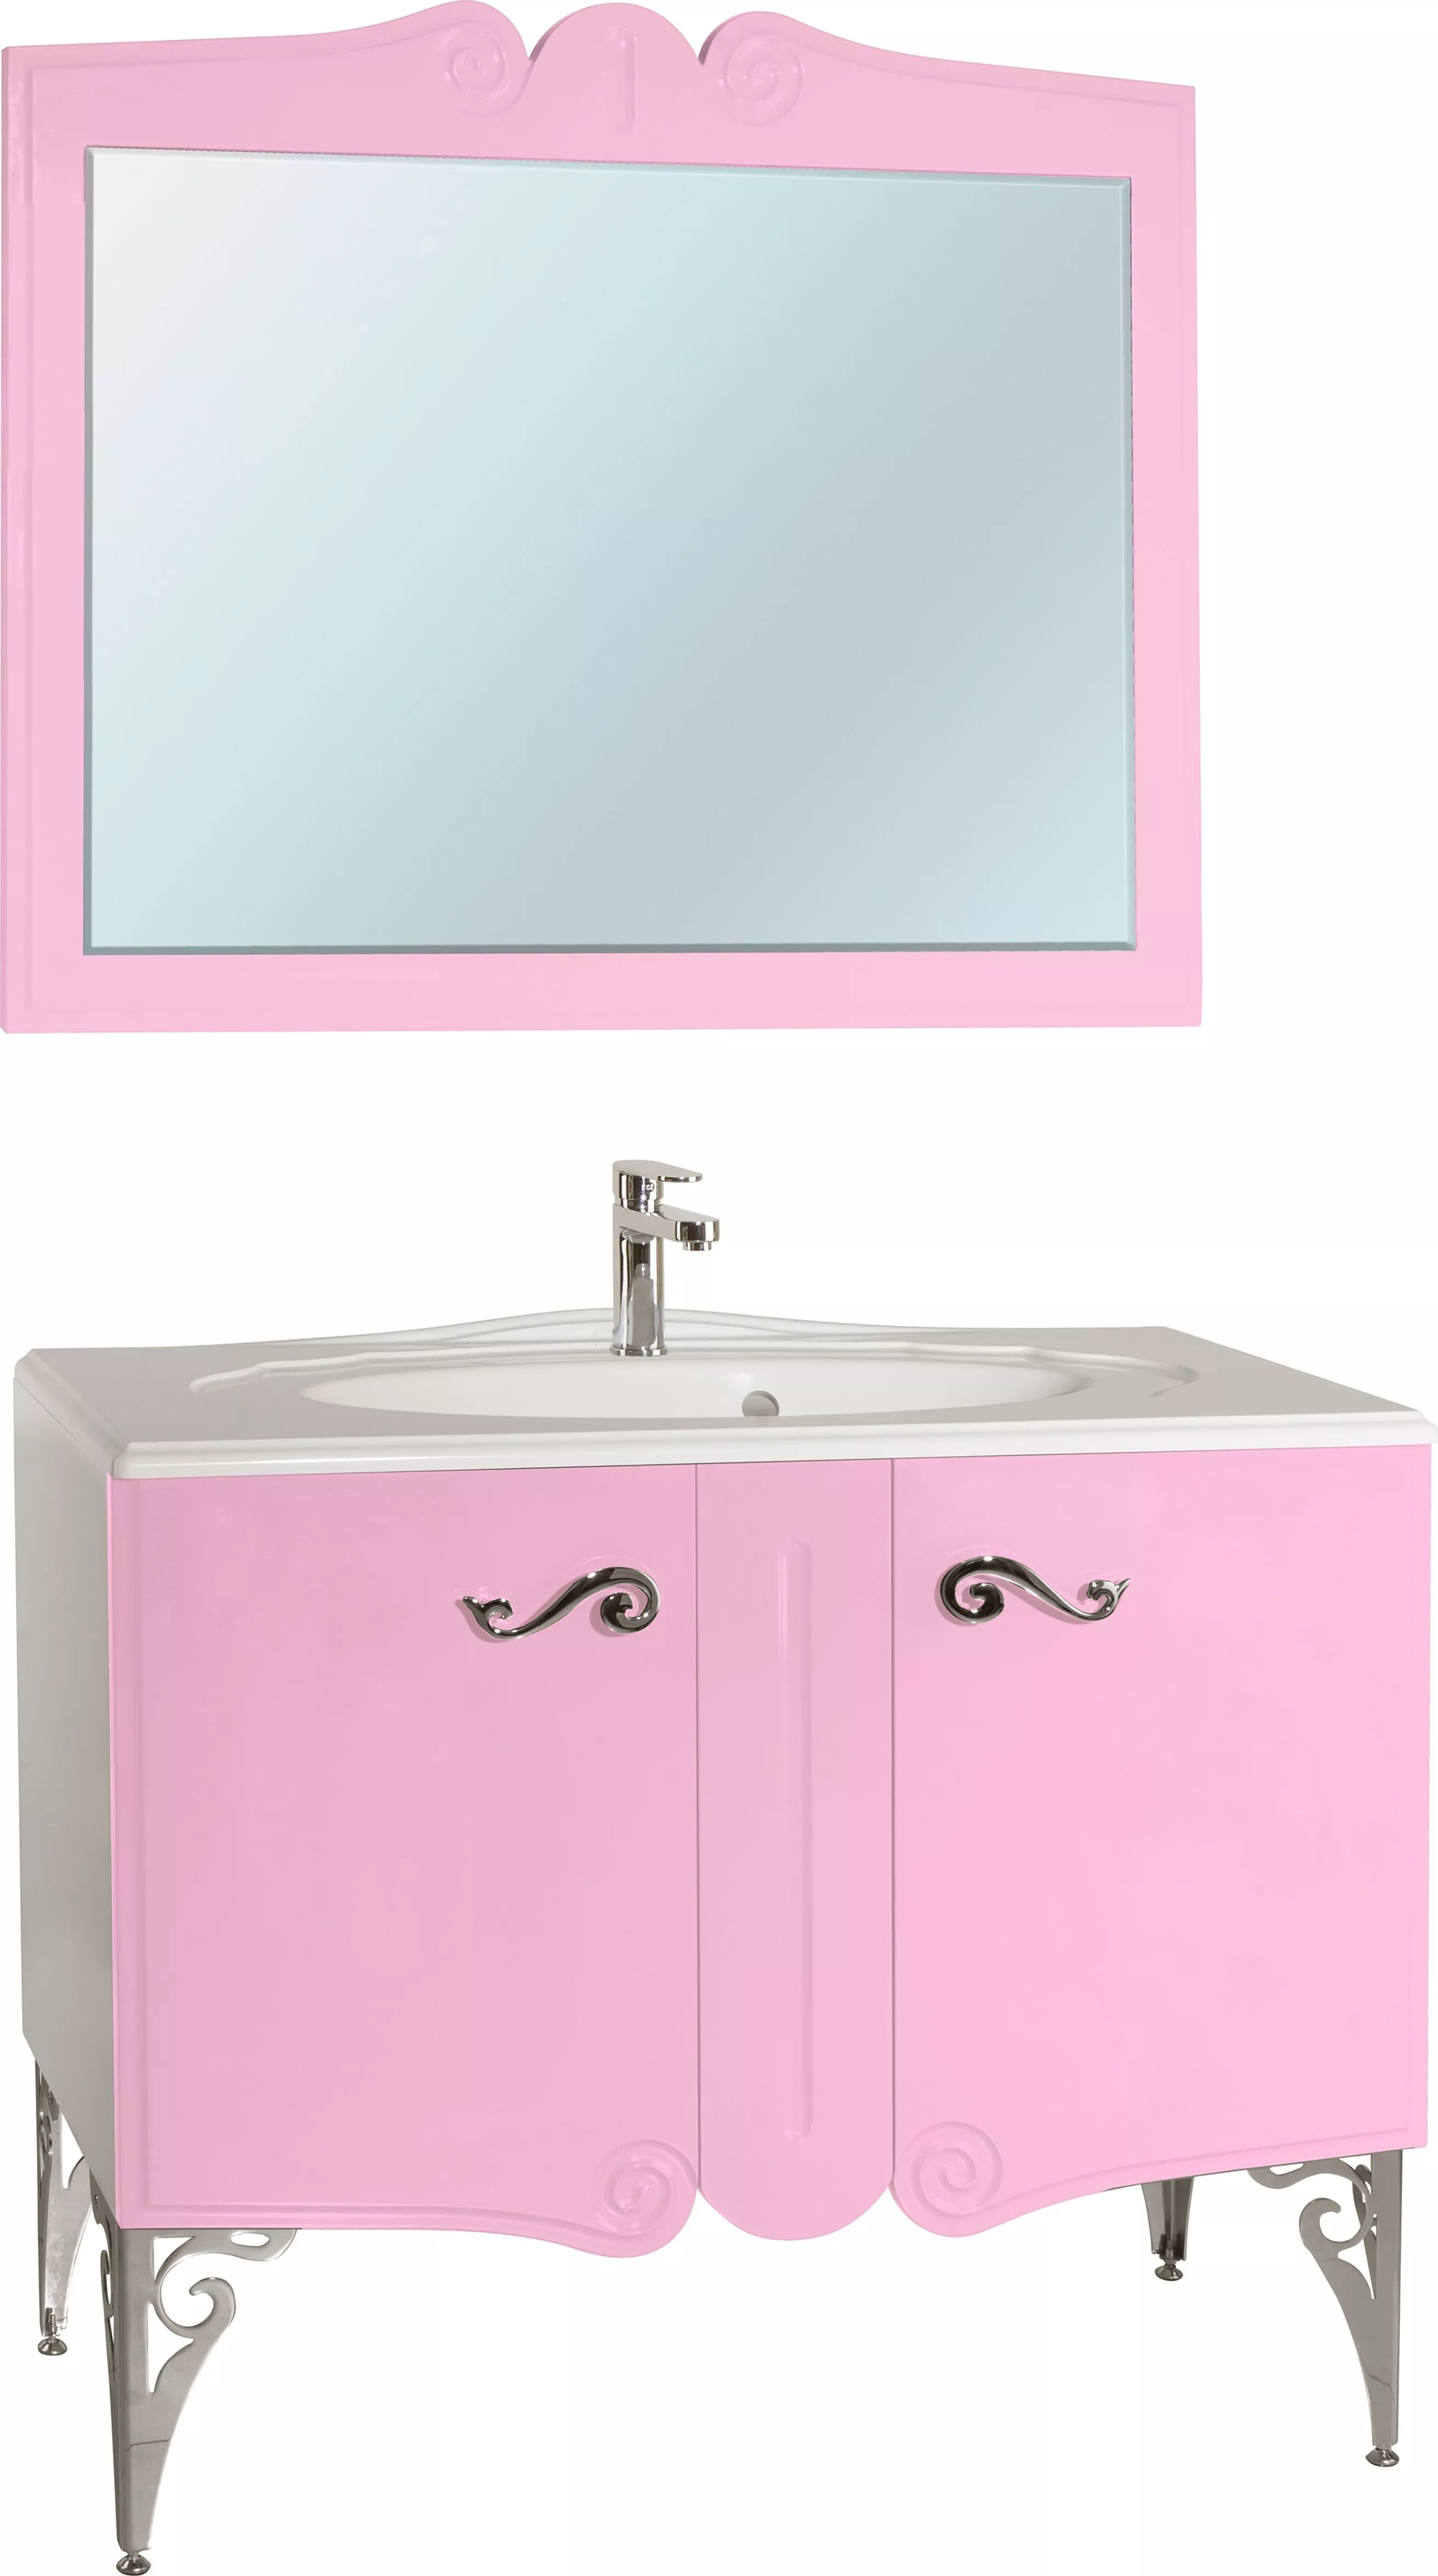 Мебель для ванной Bellezza Эстель 100 розовая, размер 100, цвет белый - фото 1